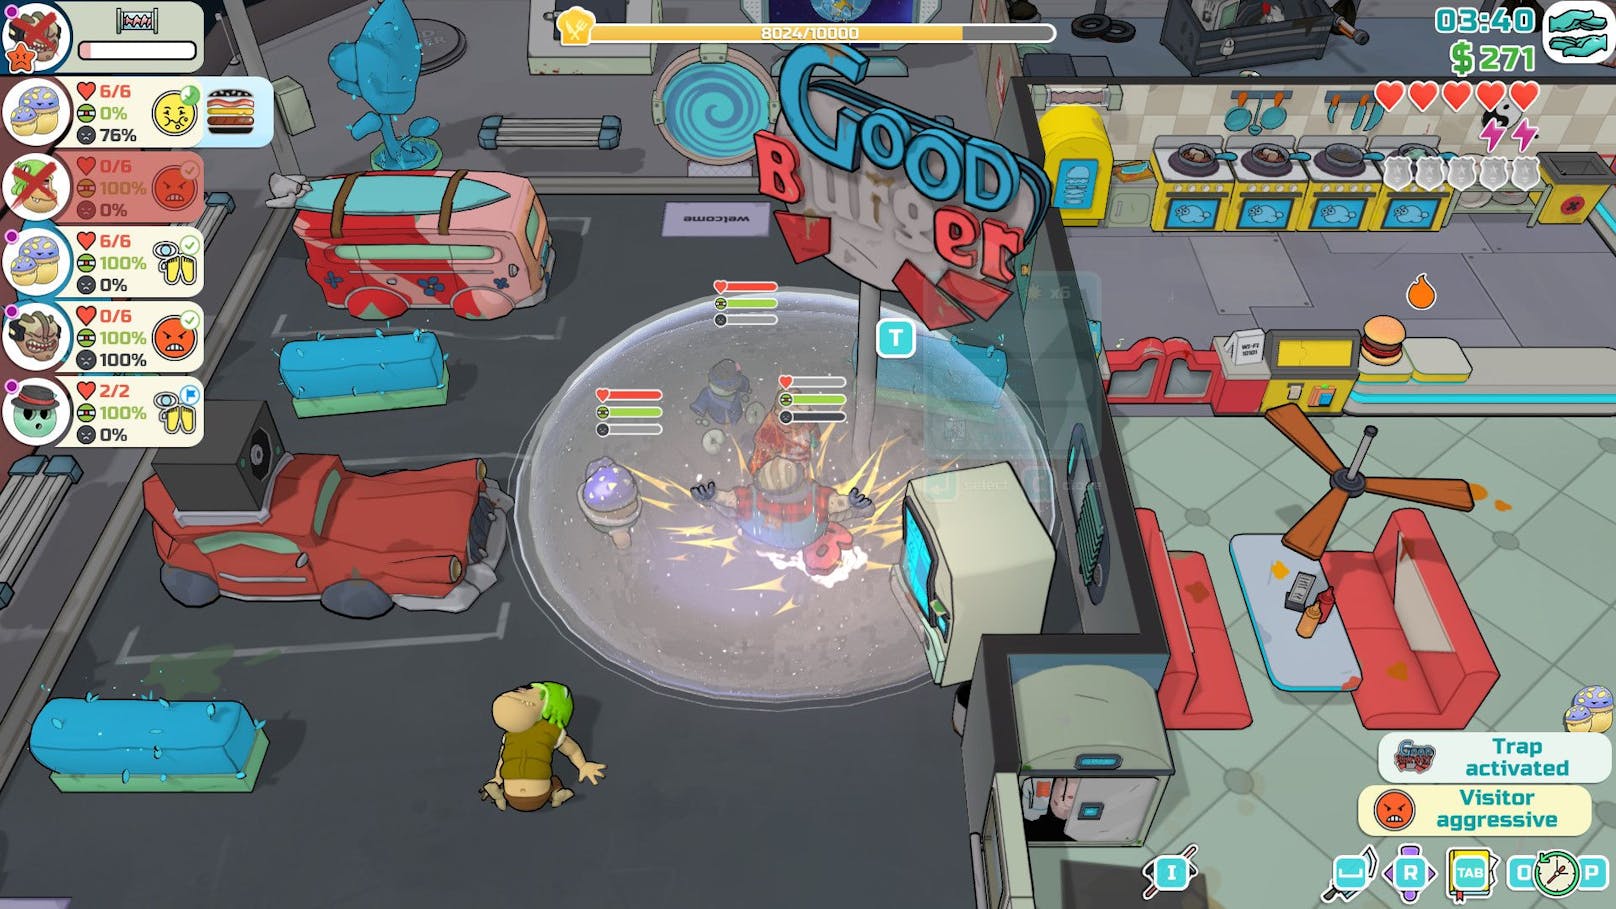 ...&nbsp;Spieler die Rolle über den Lokal-Chef übernehmen, der an sich an Bord eines Raumschiffs befindet, das gleichzeitig ein heruntergekommenes Burger-Lokal ist.